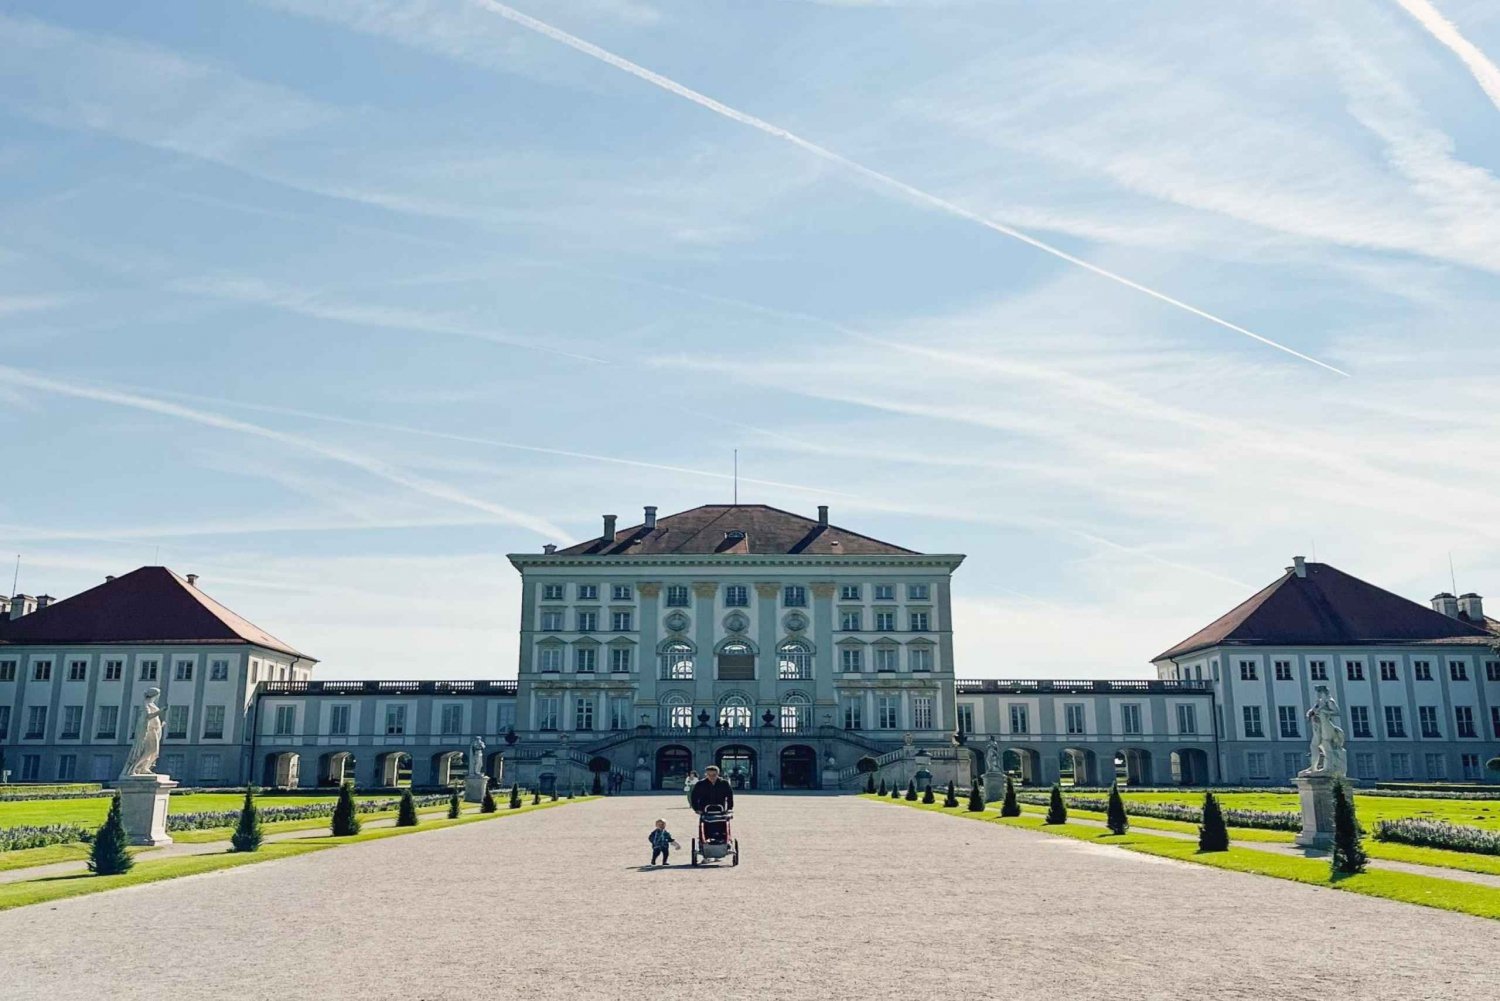 München Nymphenburgin palatsi Liput ja kiertoajelu, vaunumuseo